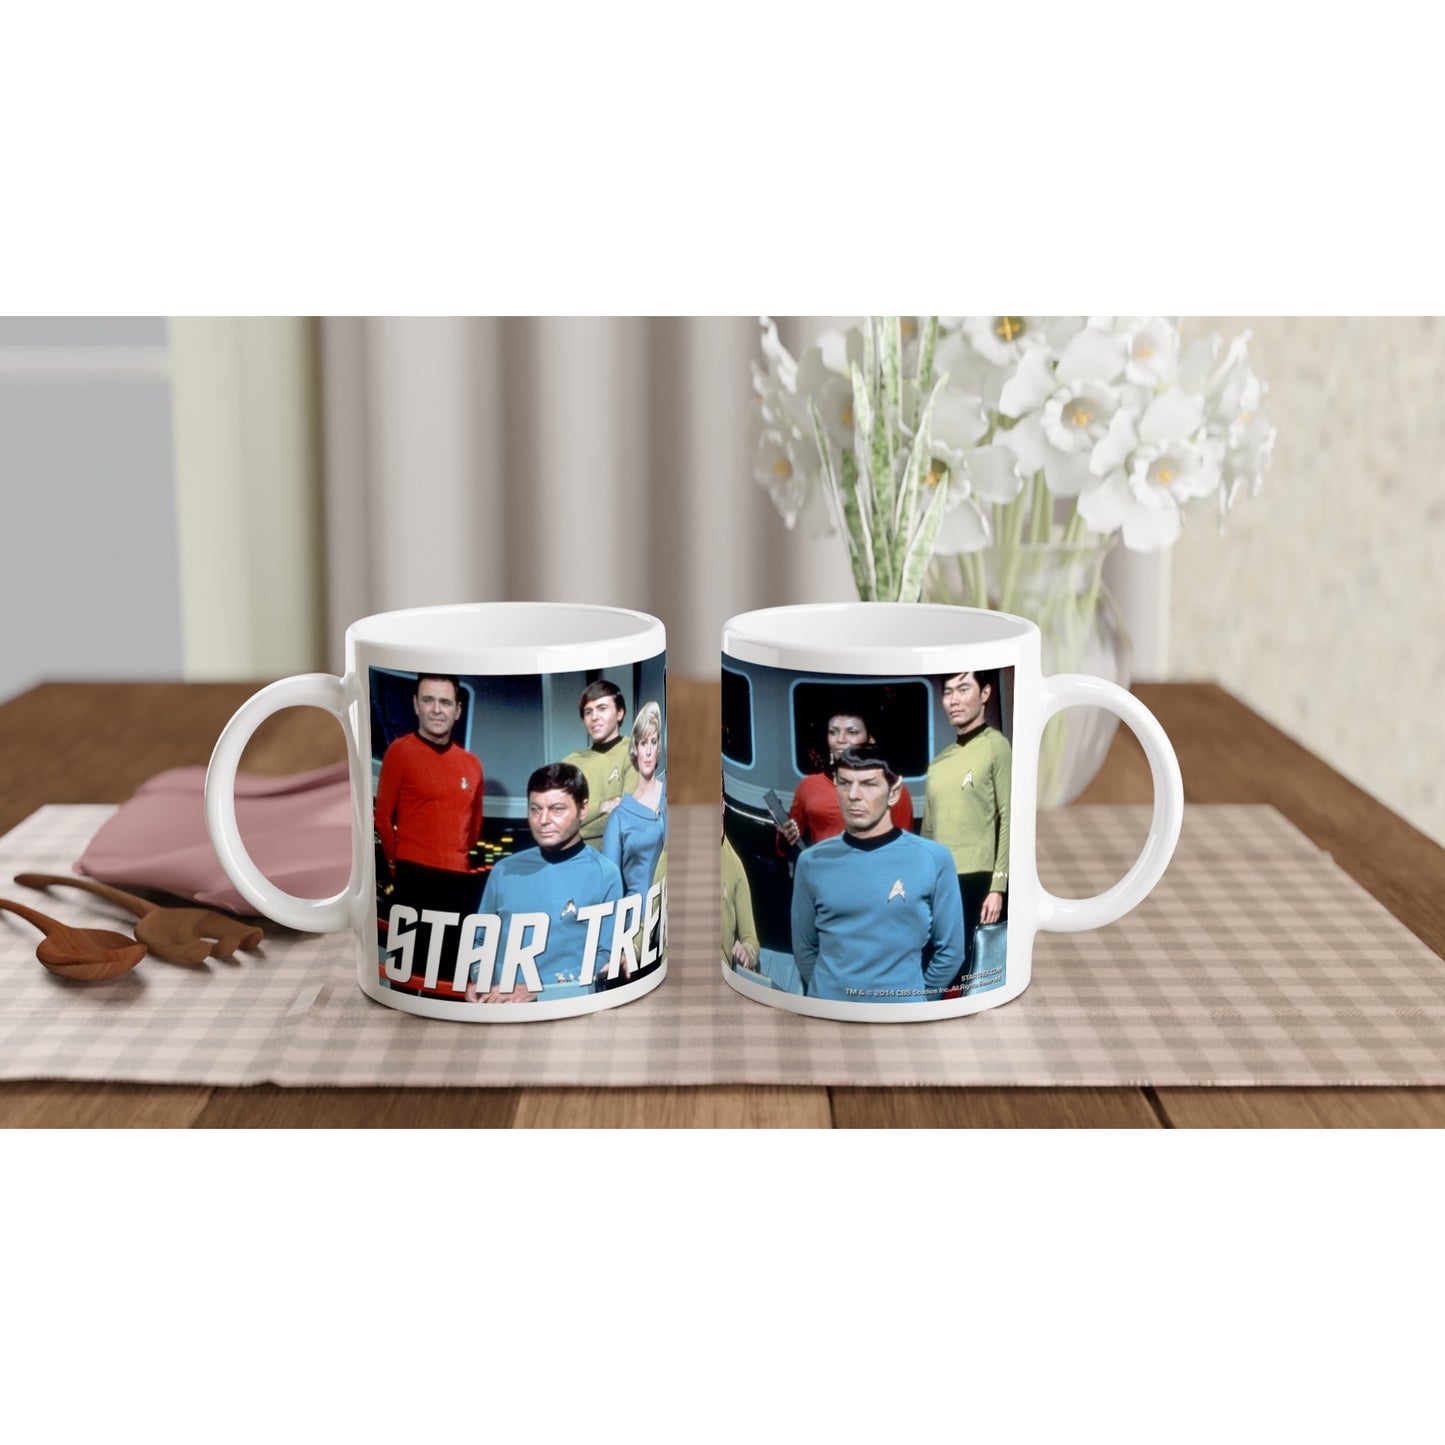 Official Star Trek Mug - The Crew - 330ml White Mug